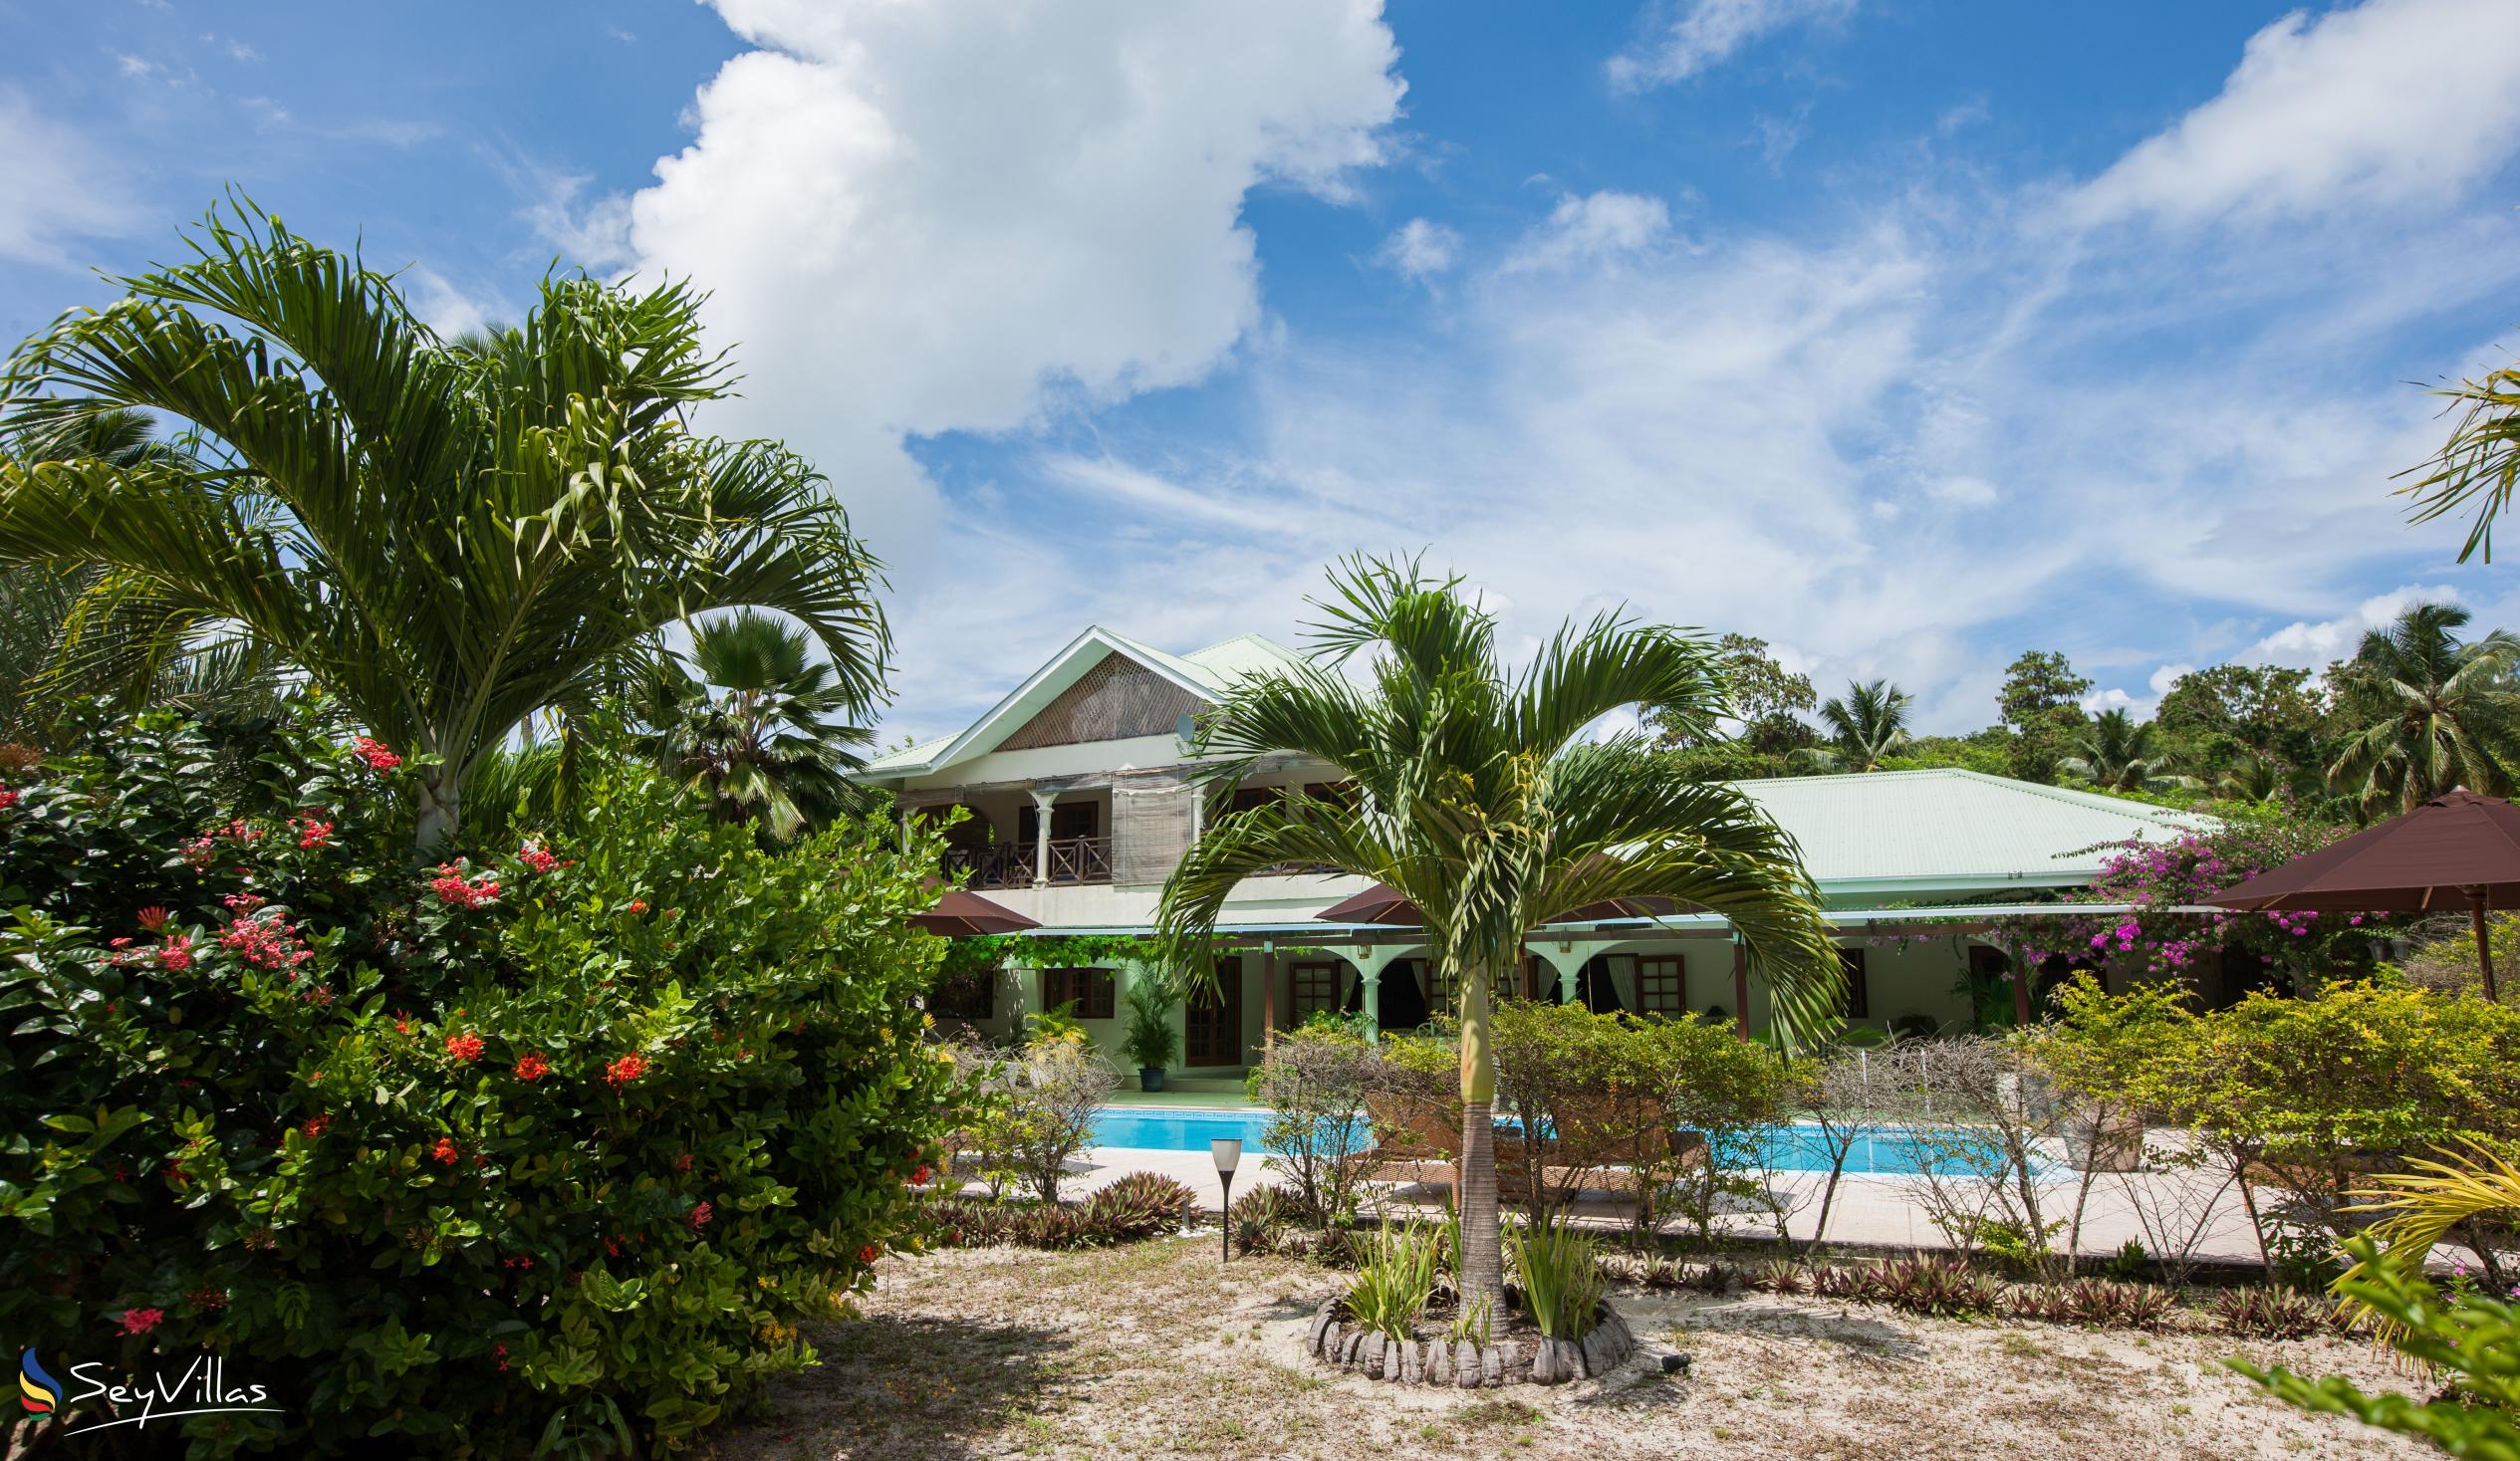 Foto 10: Villa de Cerf - Aussenbereich - Cerf Island (Seychellen)